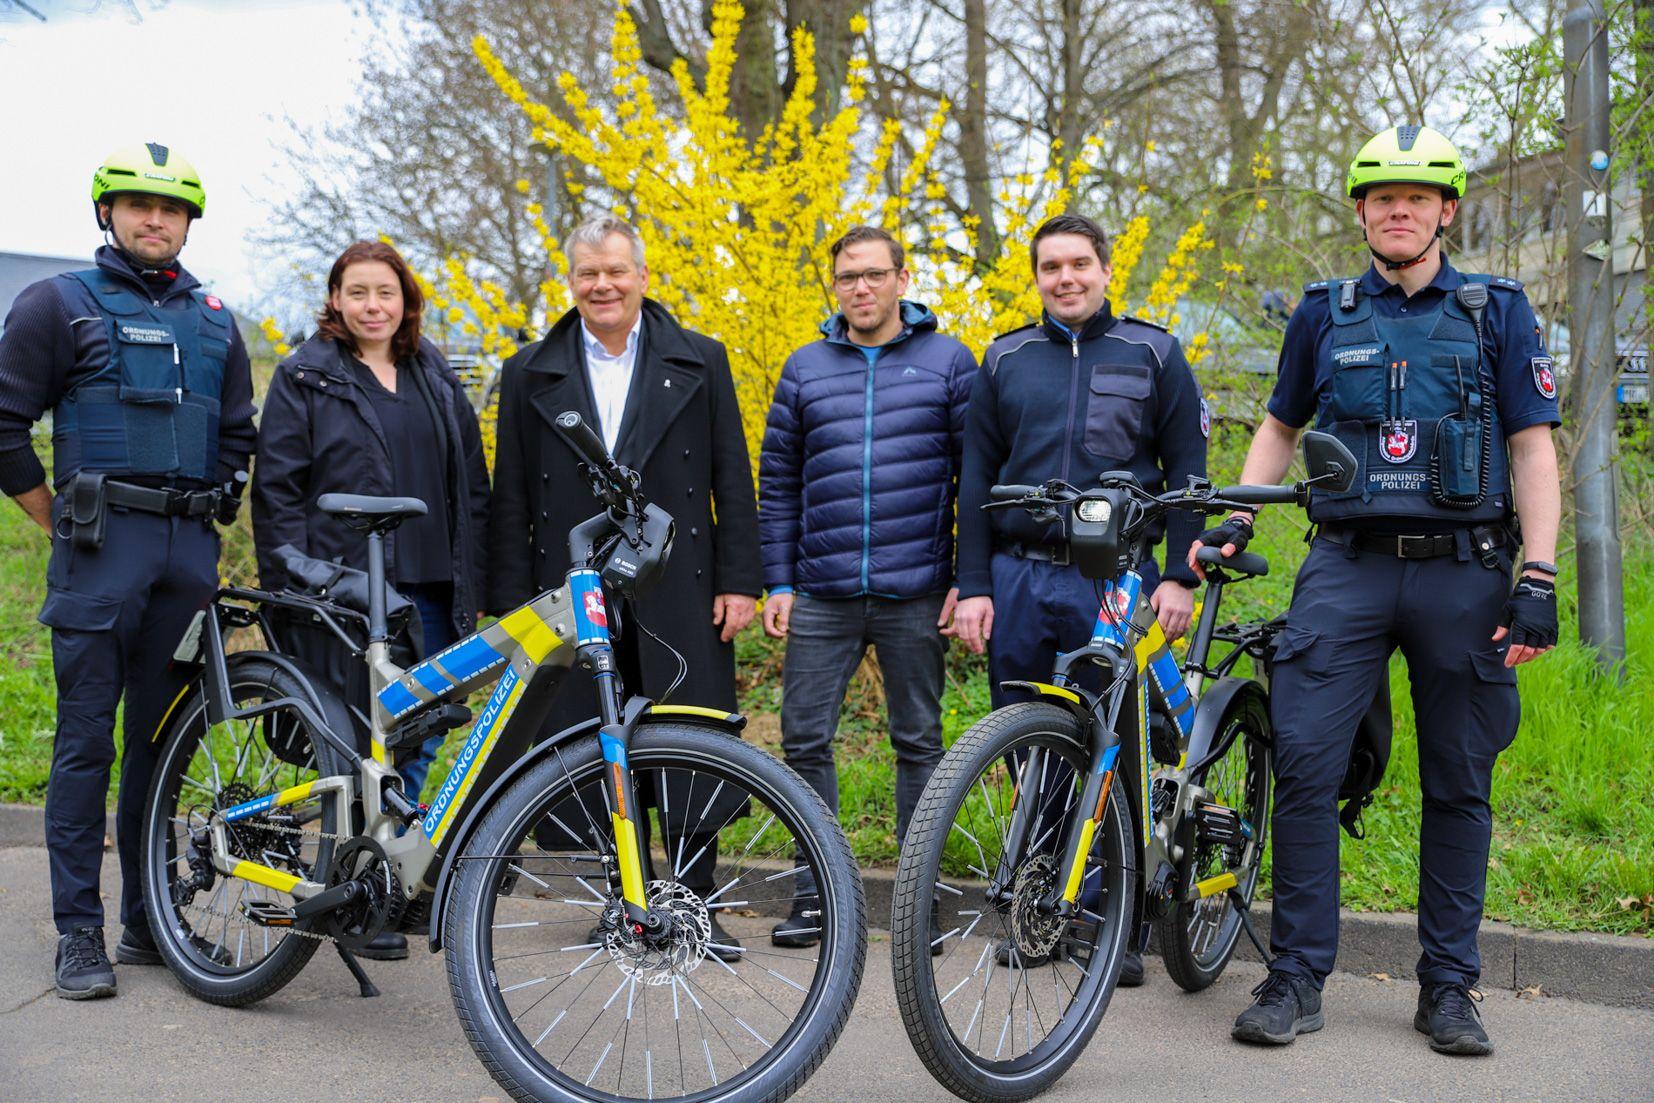 Innovative Fahrradstaffel für Sicherheit und Ordnung in Marburg | Symbolbild